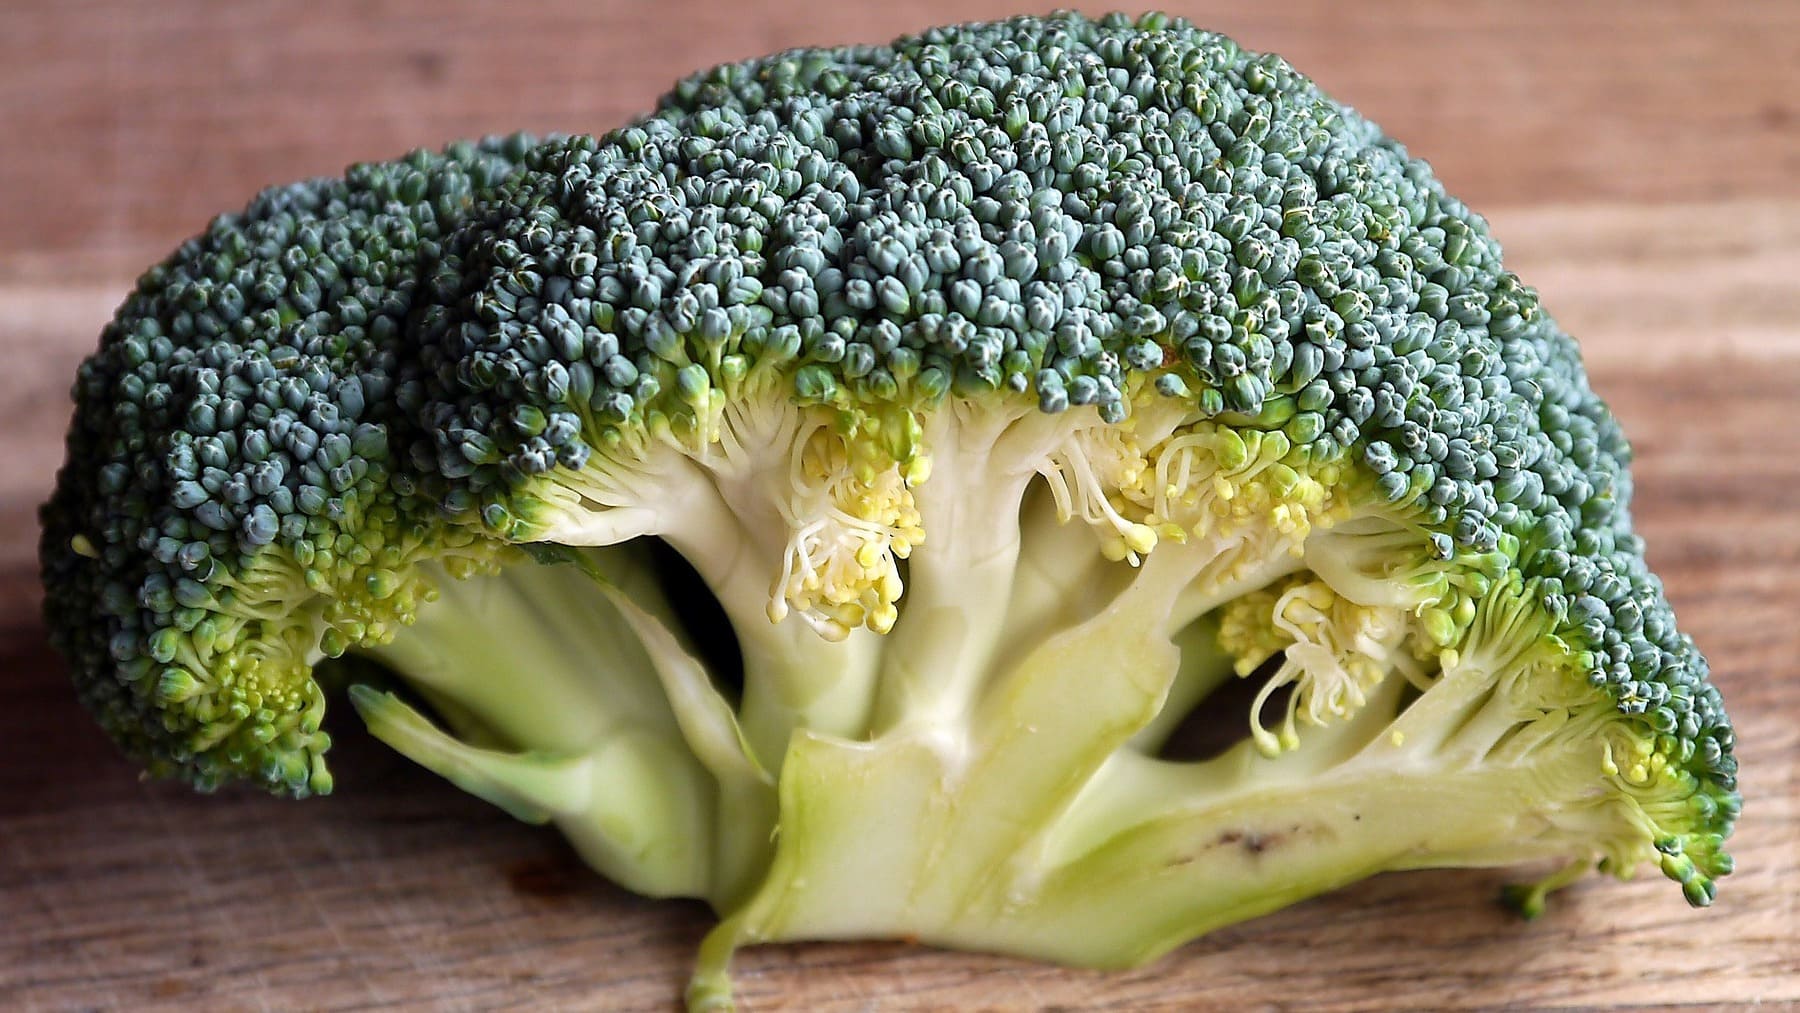 ¿El brócoli se puede congelar? La mejor forma de conservarlo